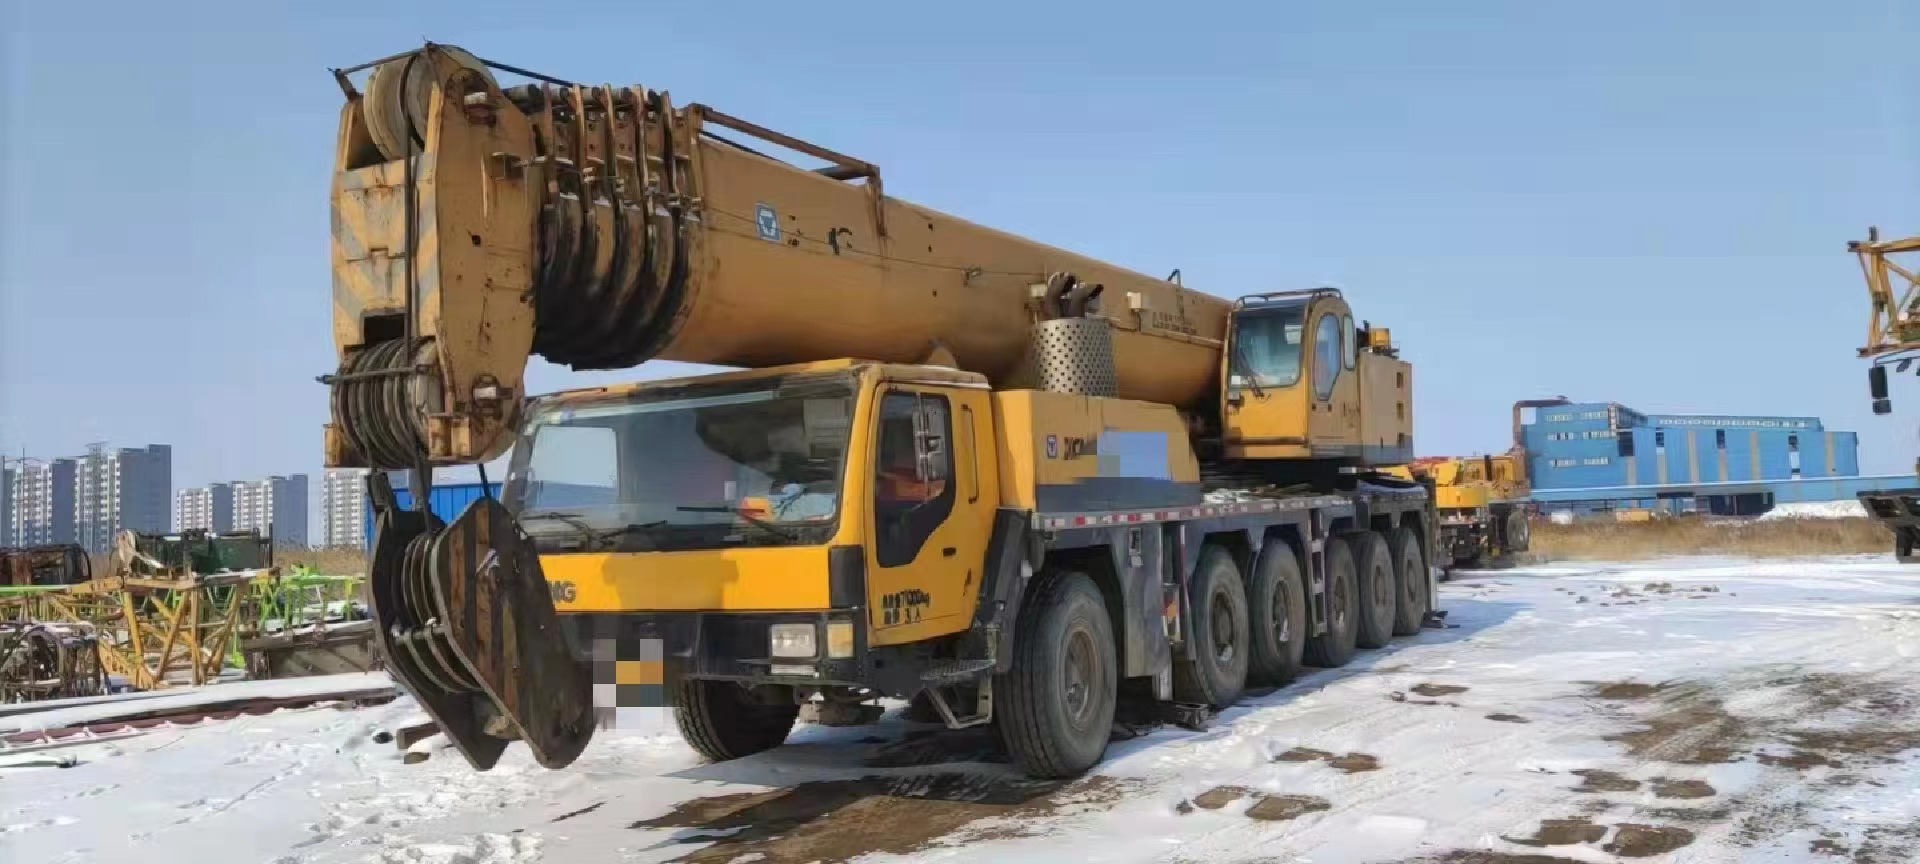 Marca china usada XCMG QAY160 con camión grúa móvil todo terreno pesado de 160 toneladas para levantar varios proyectos a gran escala 9